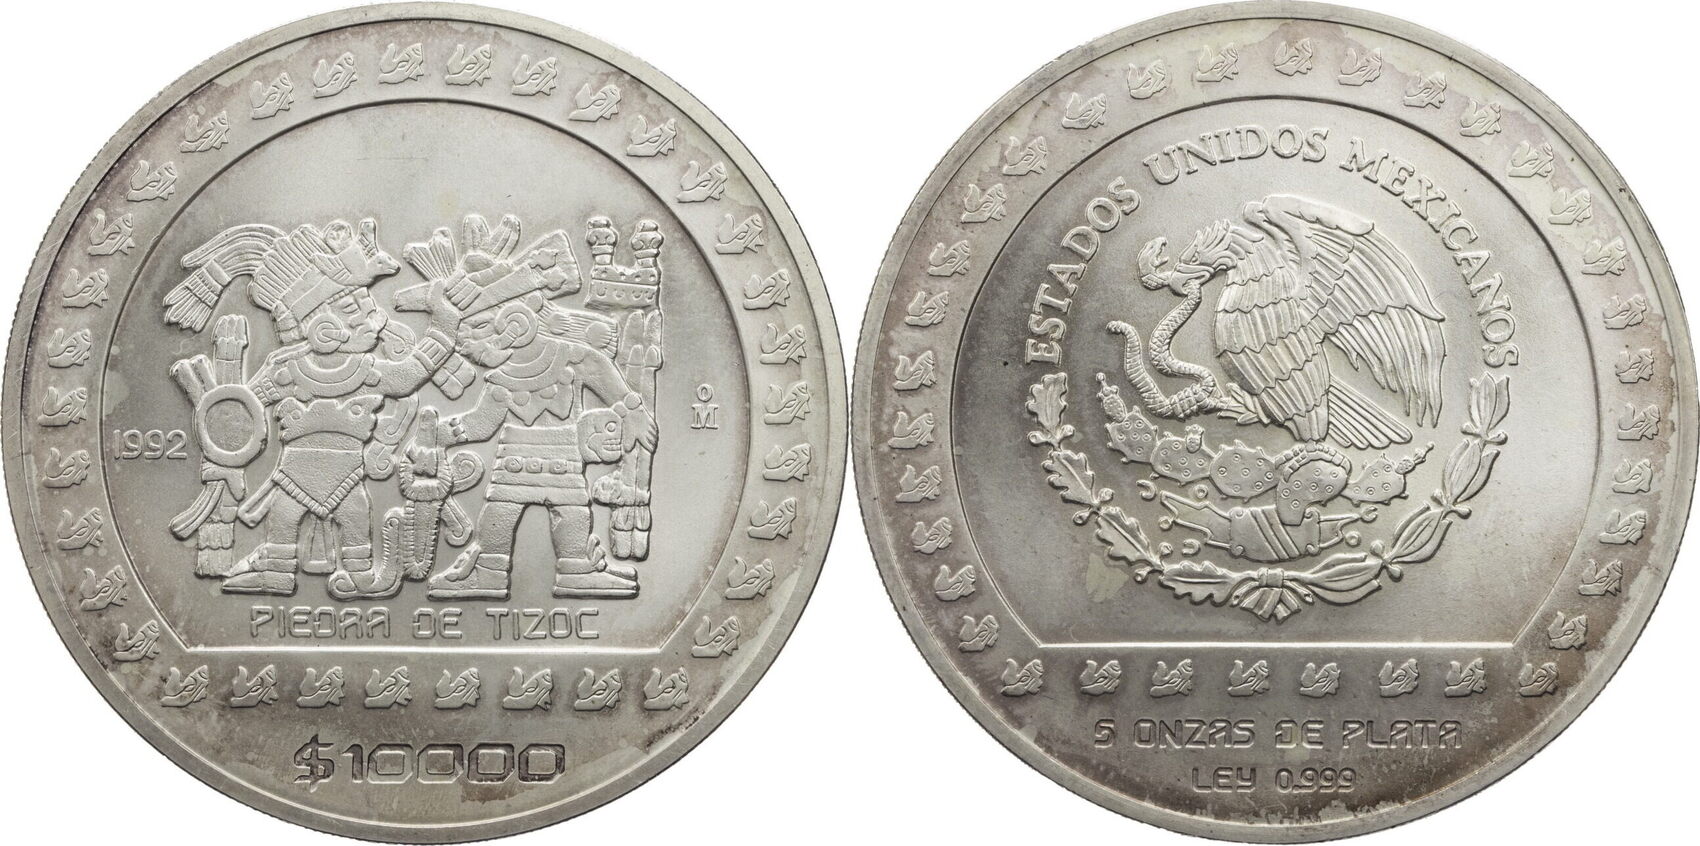 140. 000 pesos colombianos a euros